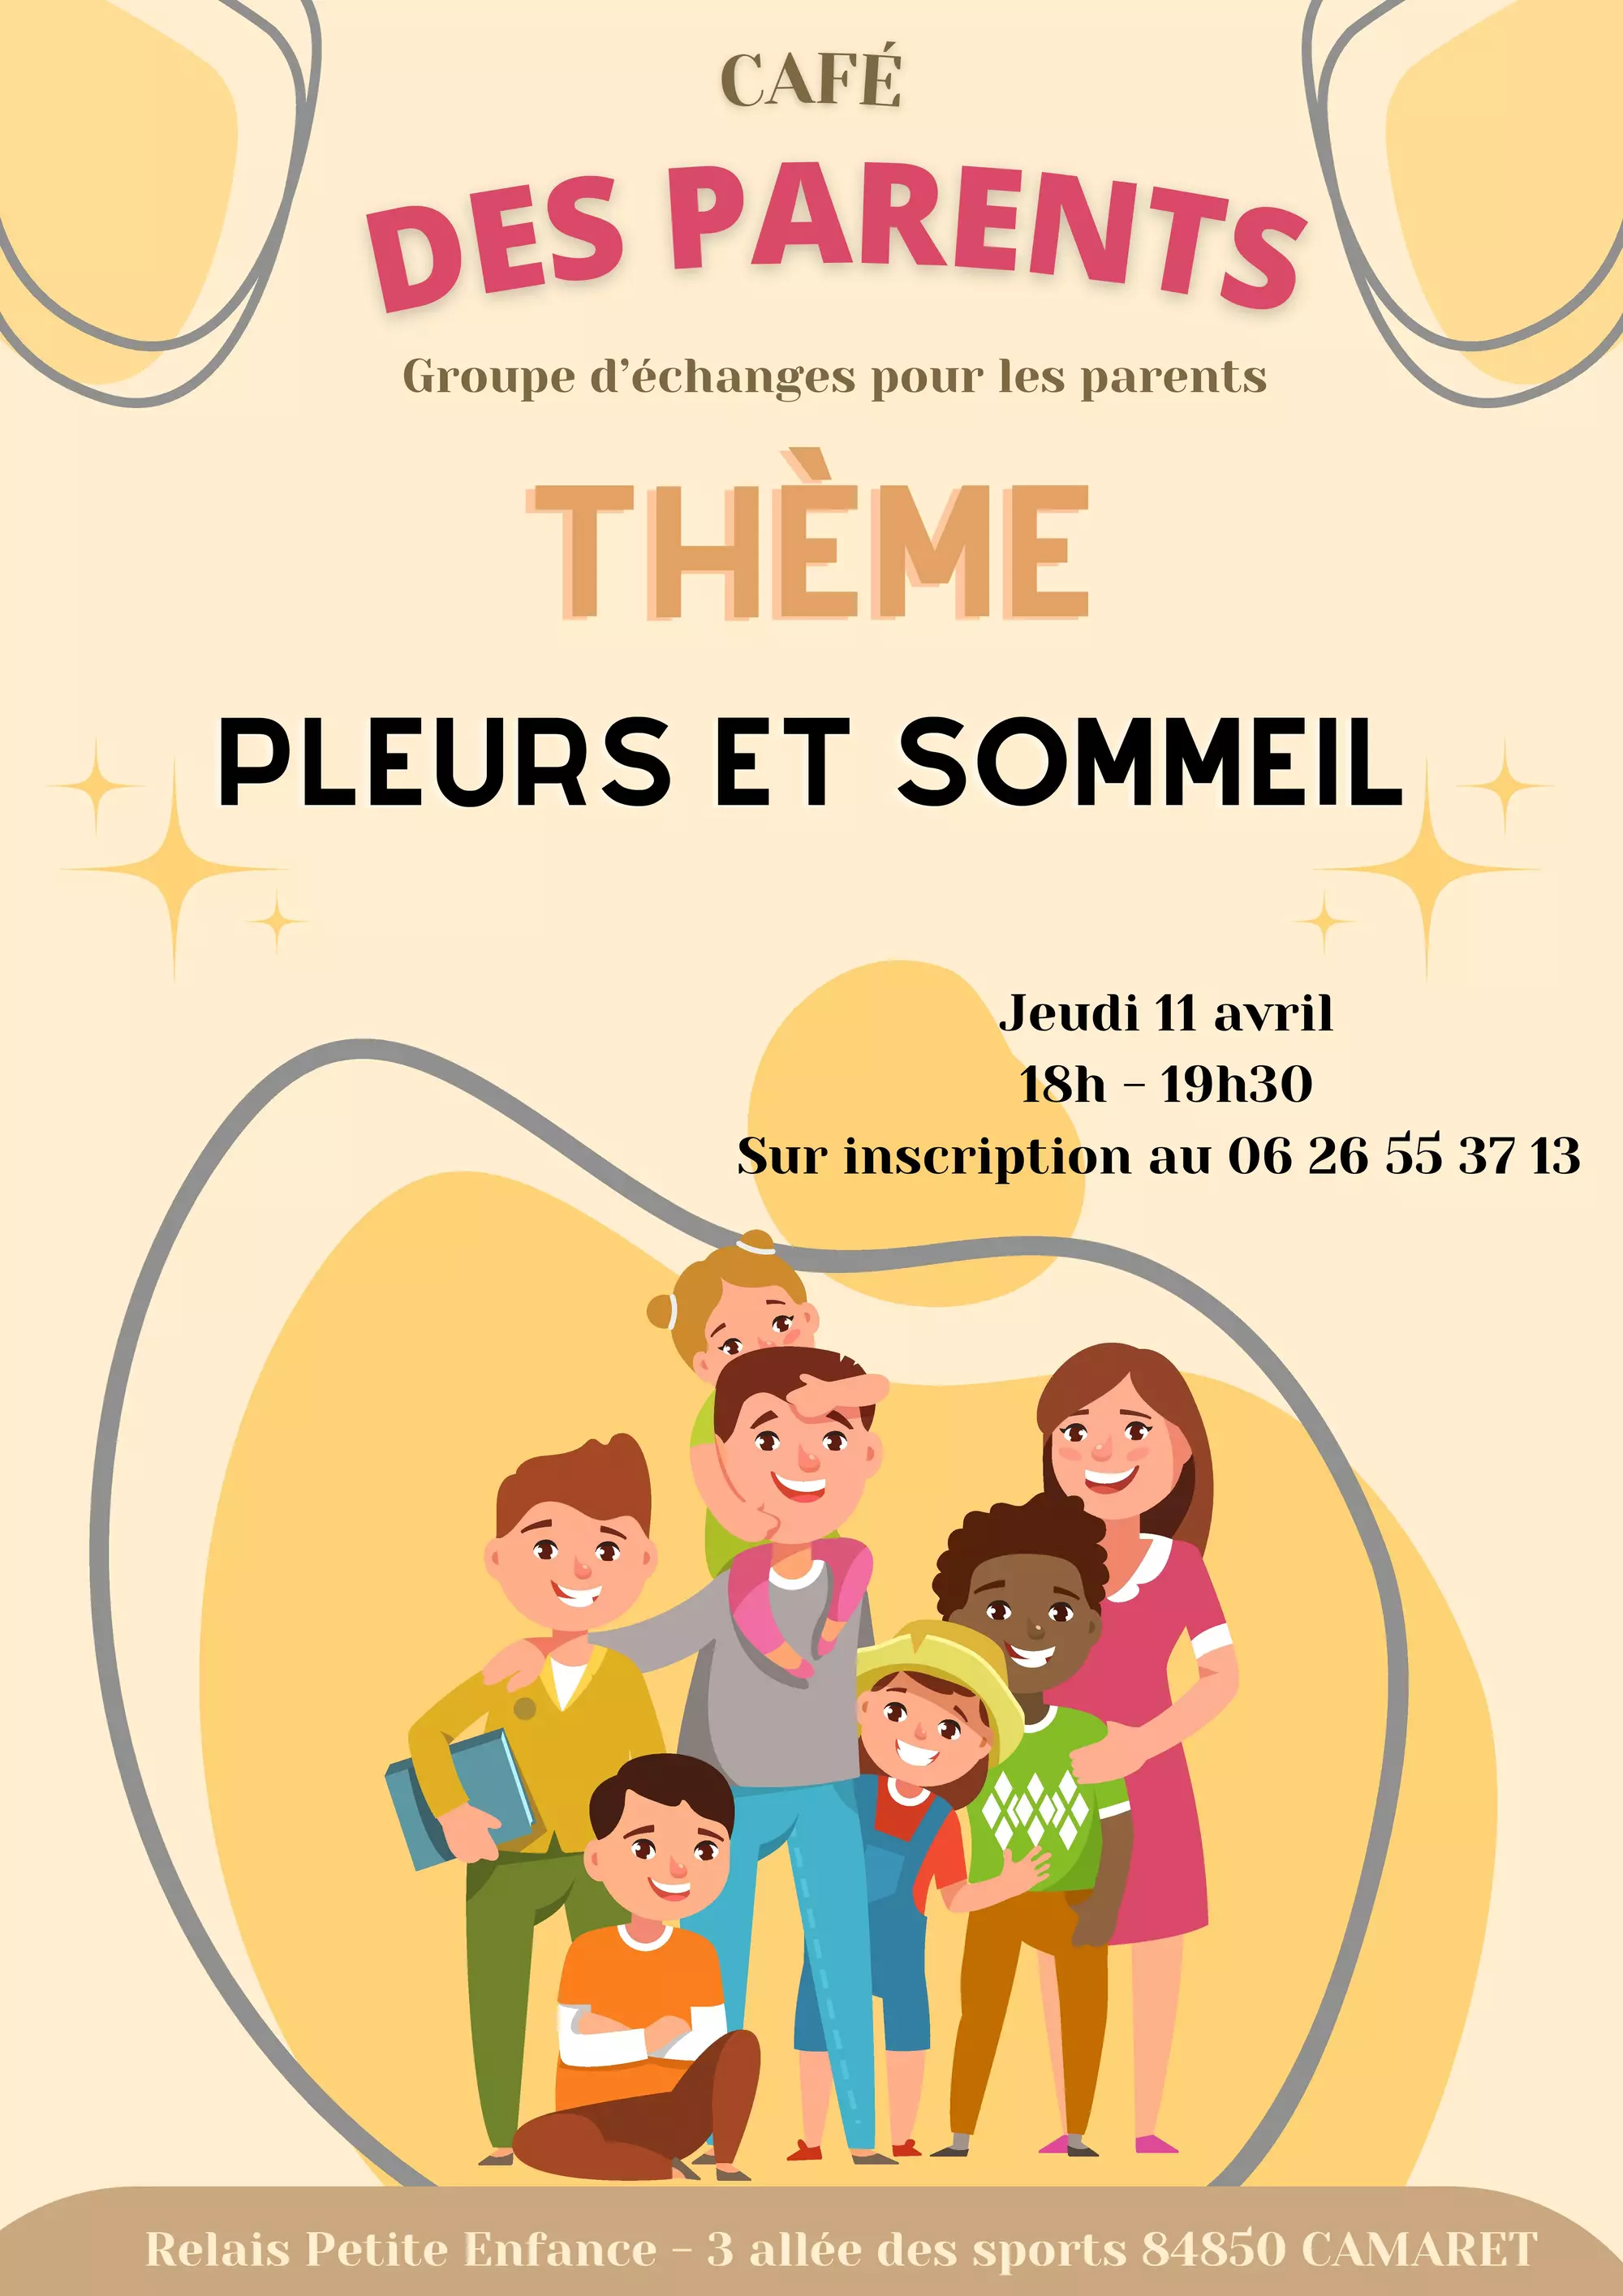 Café des parents organisé par le Relais Petite Enfance (RPE) le jeudi 11 avril de 18h00 à 19h30 à la Maison Pour Tous